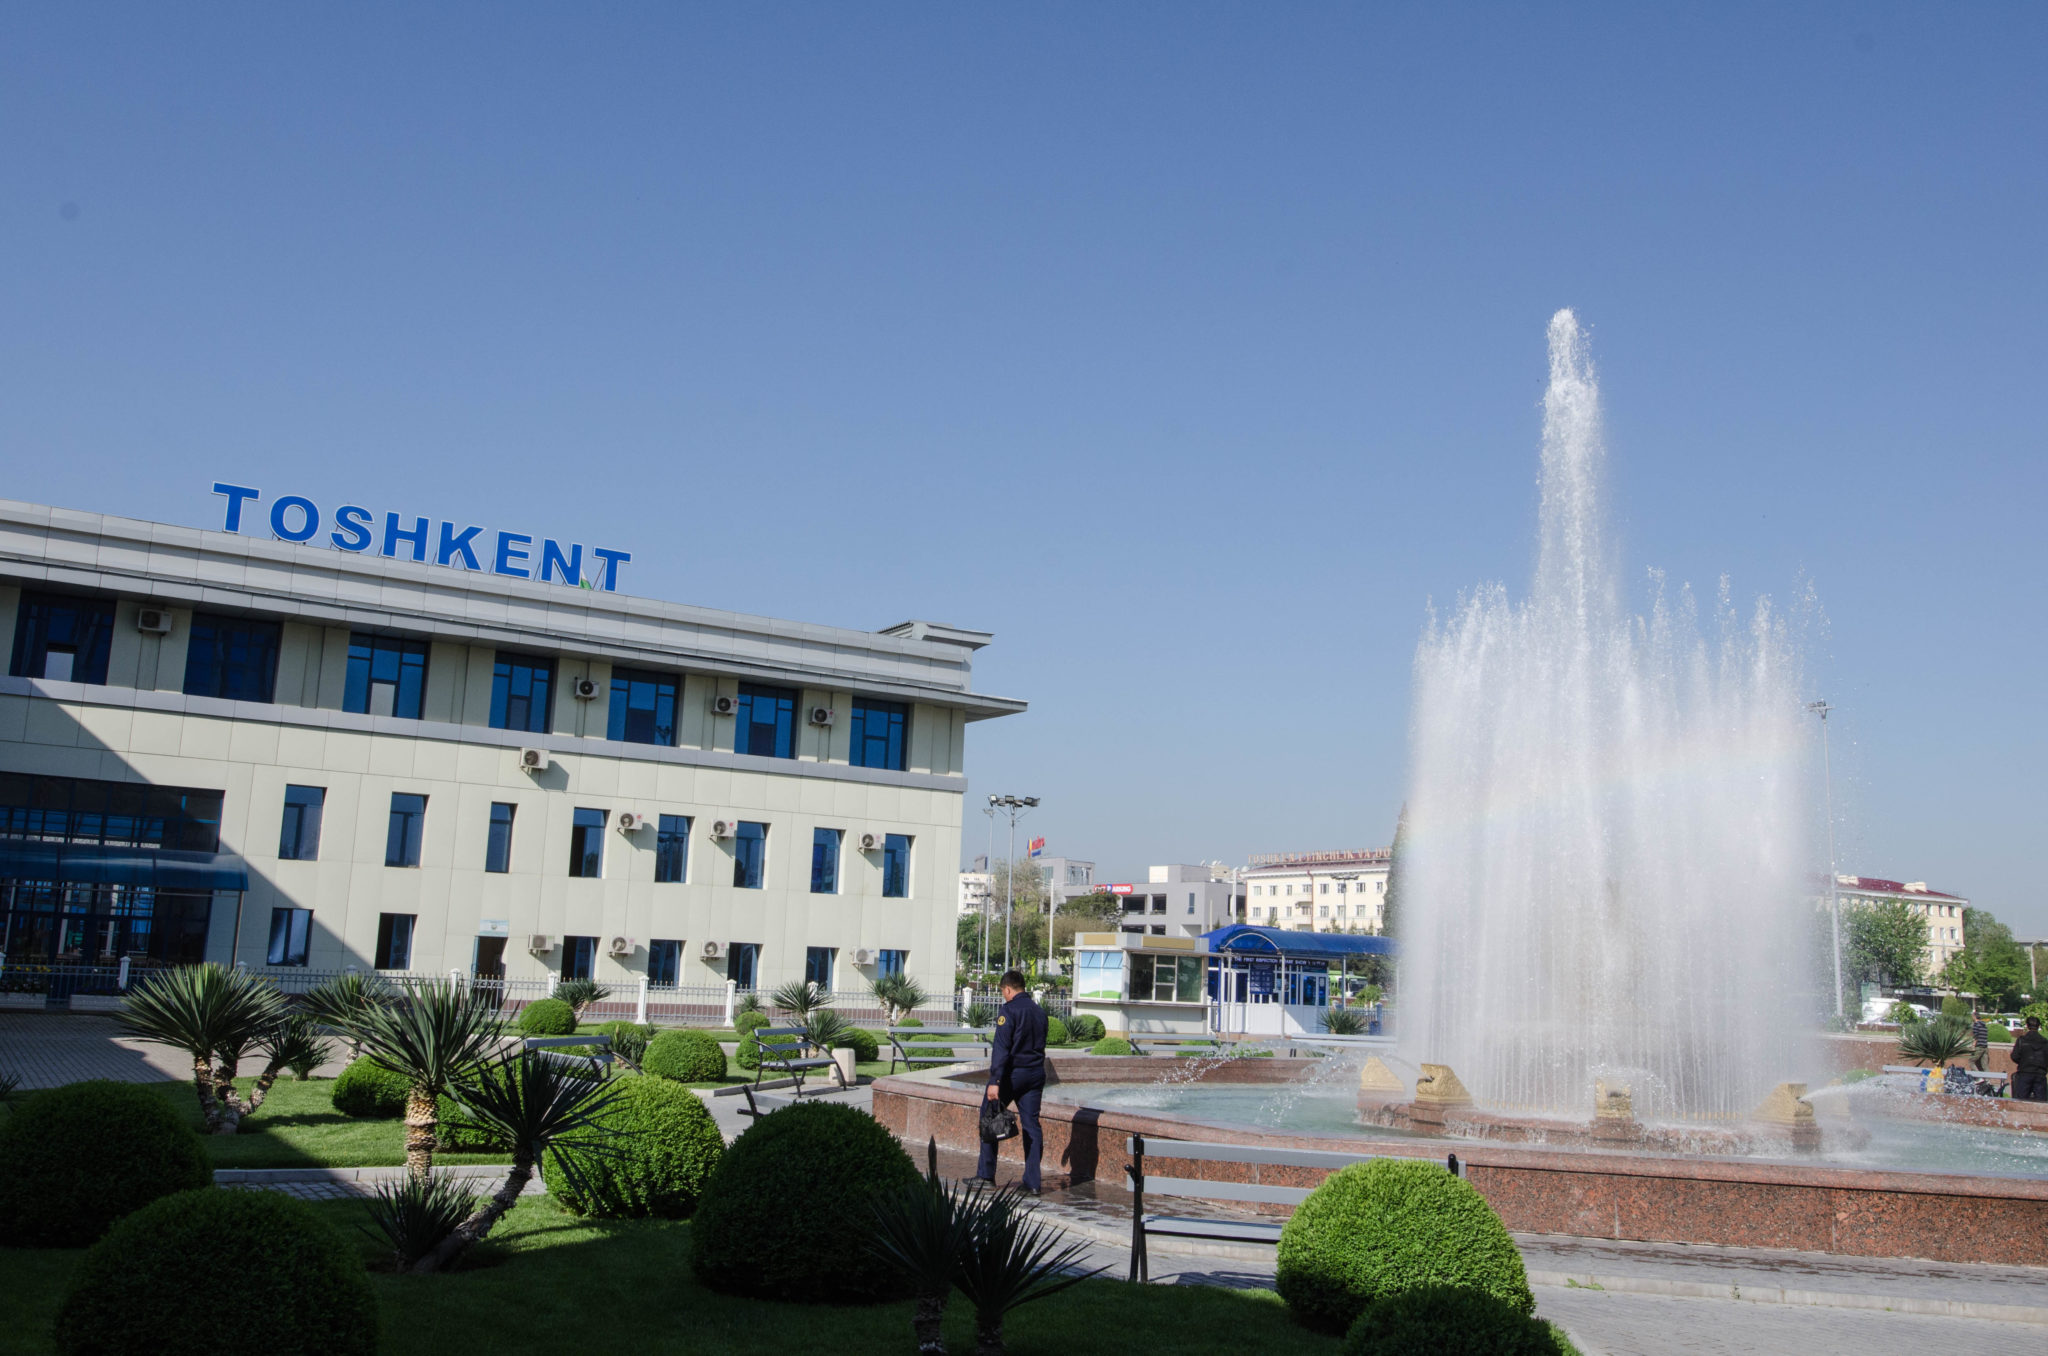 Architektur in Taschkent